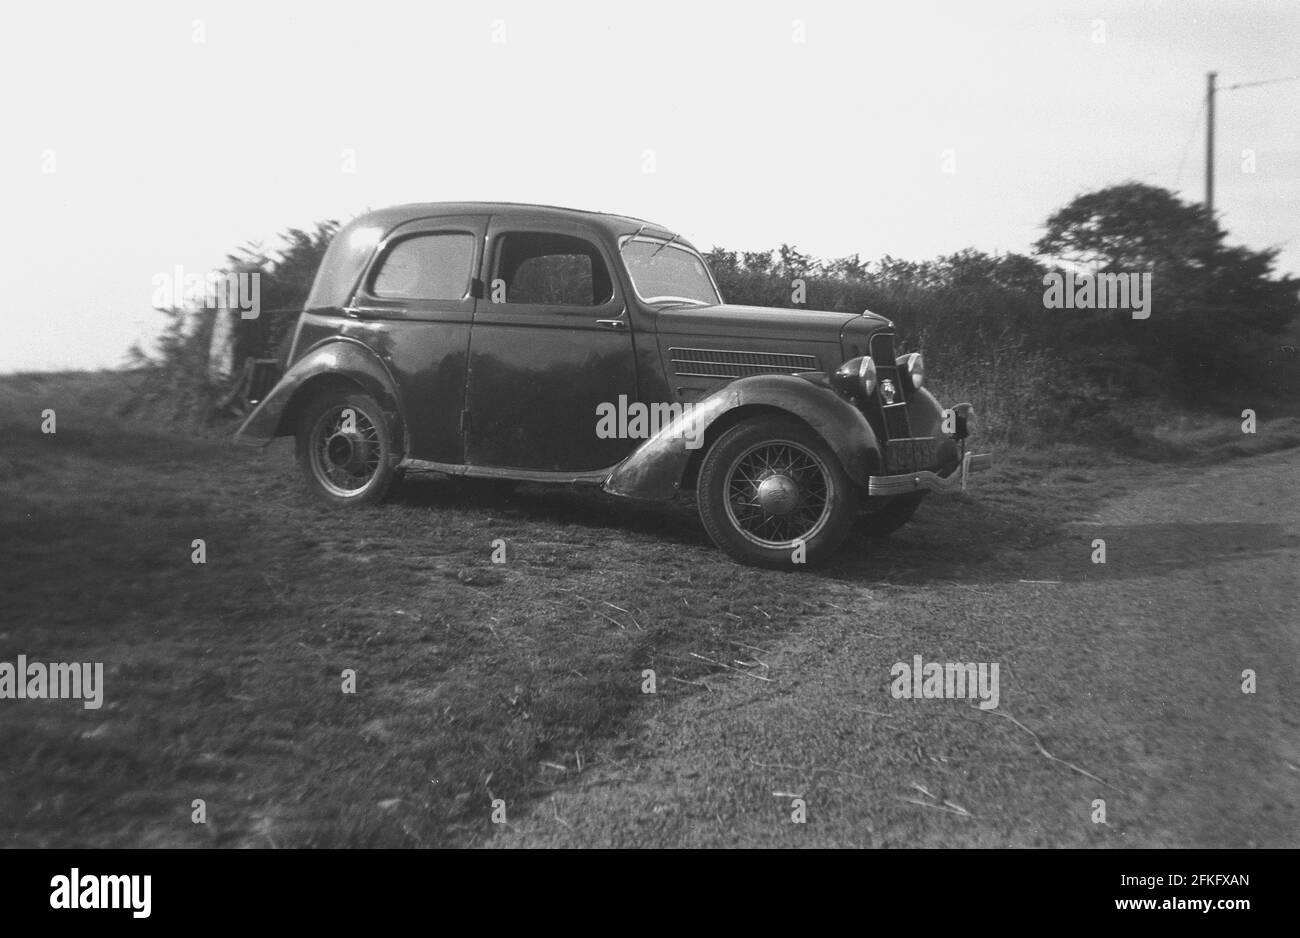 1940er Jahre, historisches Seitenprofil eines Ford-Autos der Ära mit Drahträdern, geparkt auf einem grasbewachsenen Rand oder Seitenbereich einer Landstraße, England, Großbritannien. Stockfoto